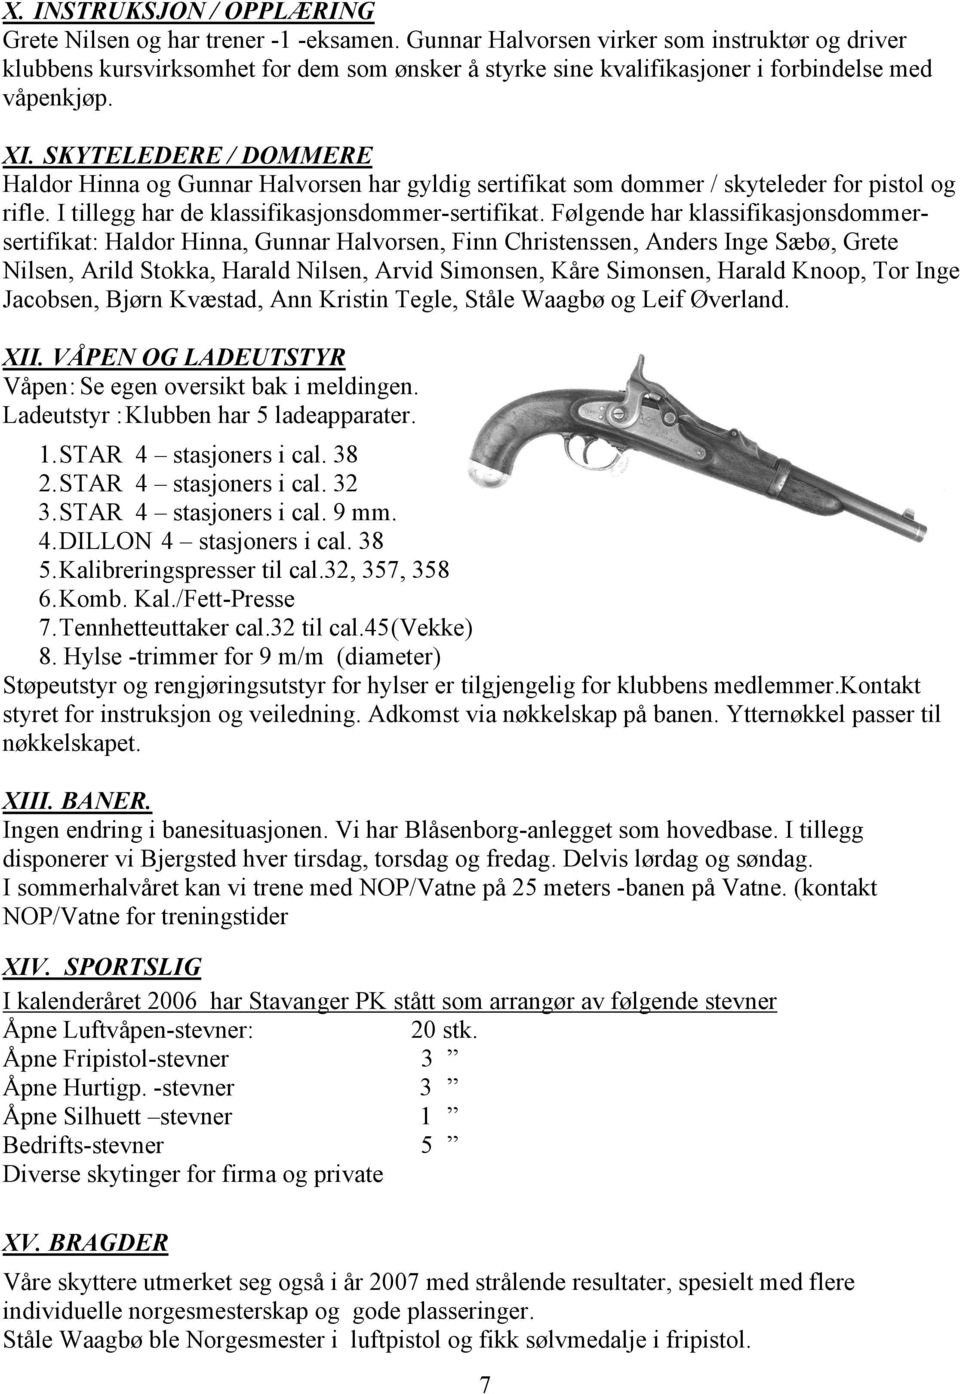 SKYTELEDERE / DOMMERE Haldor Hinna og Gunnar Halvorsen har gyldig sertifikat som dommer / skyteleder for pistol og rifle. I tillegg har de klassifikasjonsdommer-sertifikat.